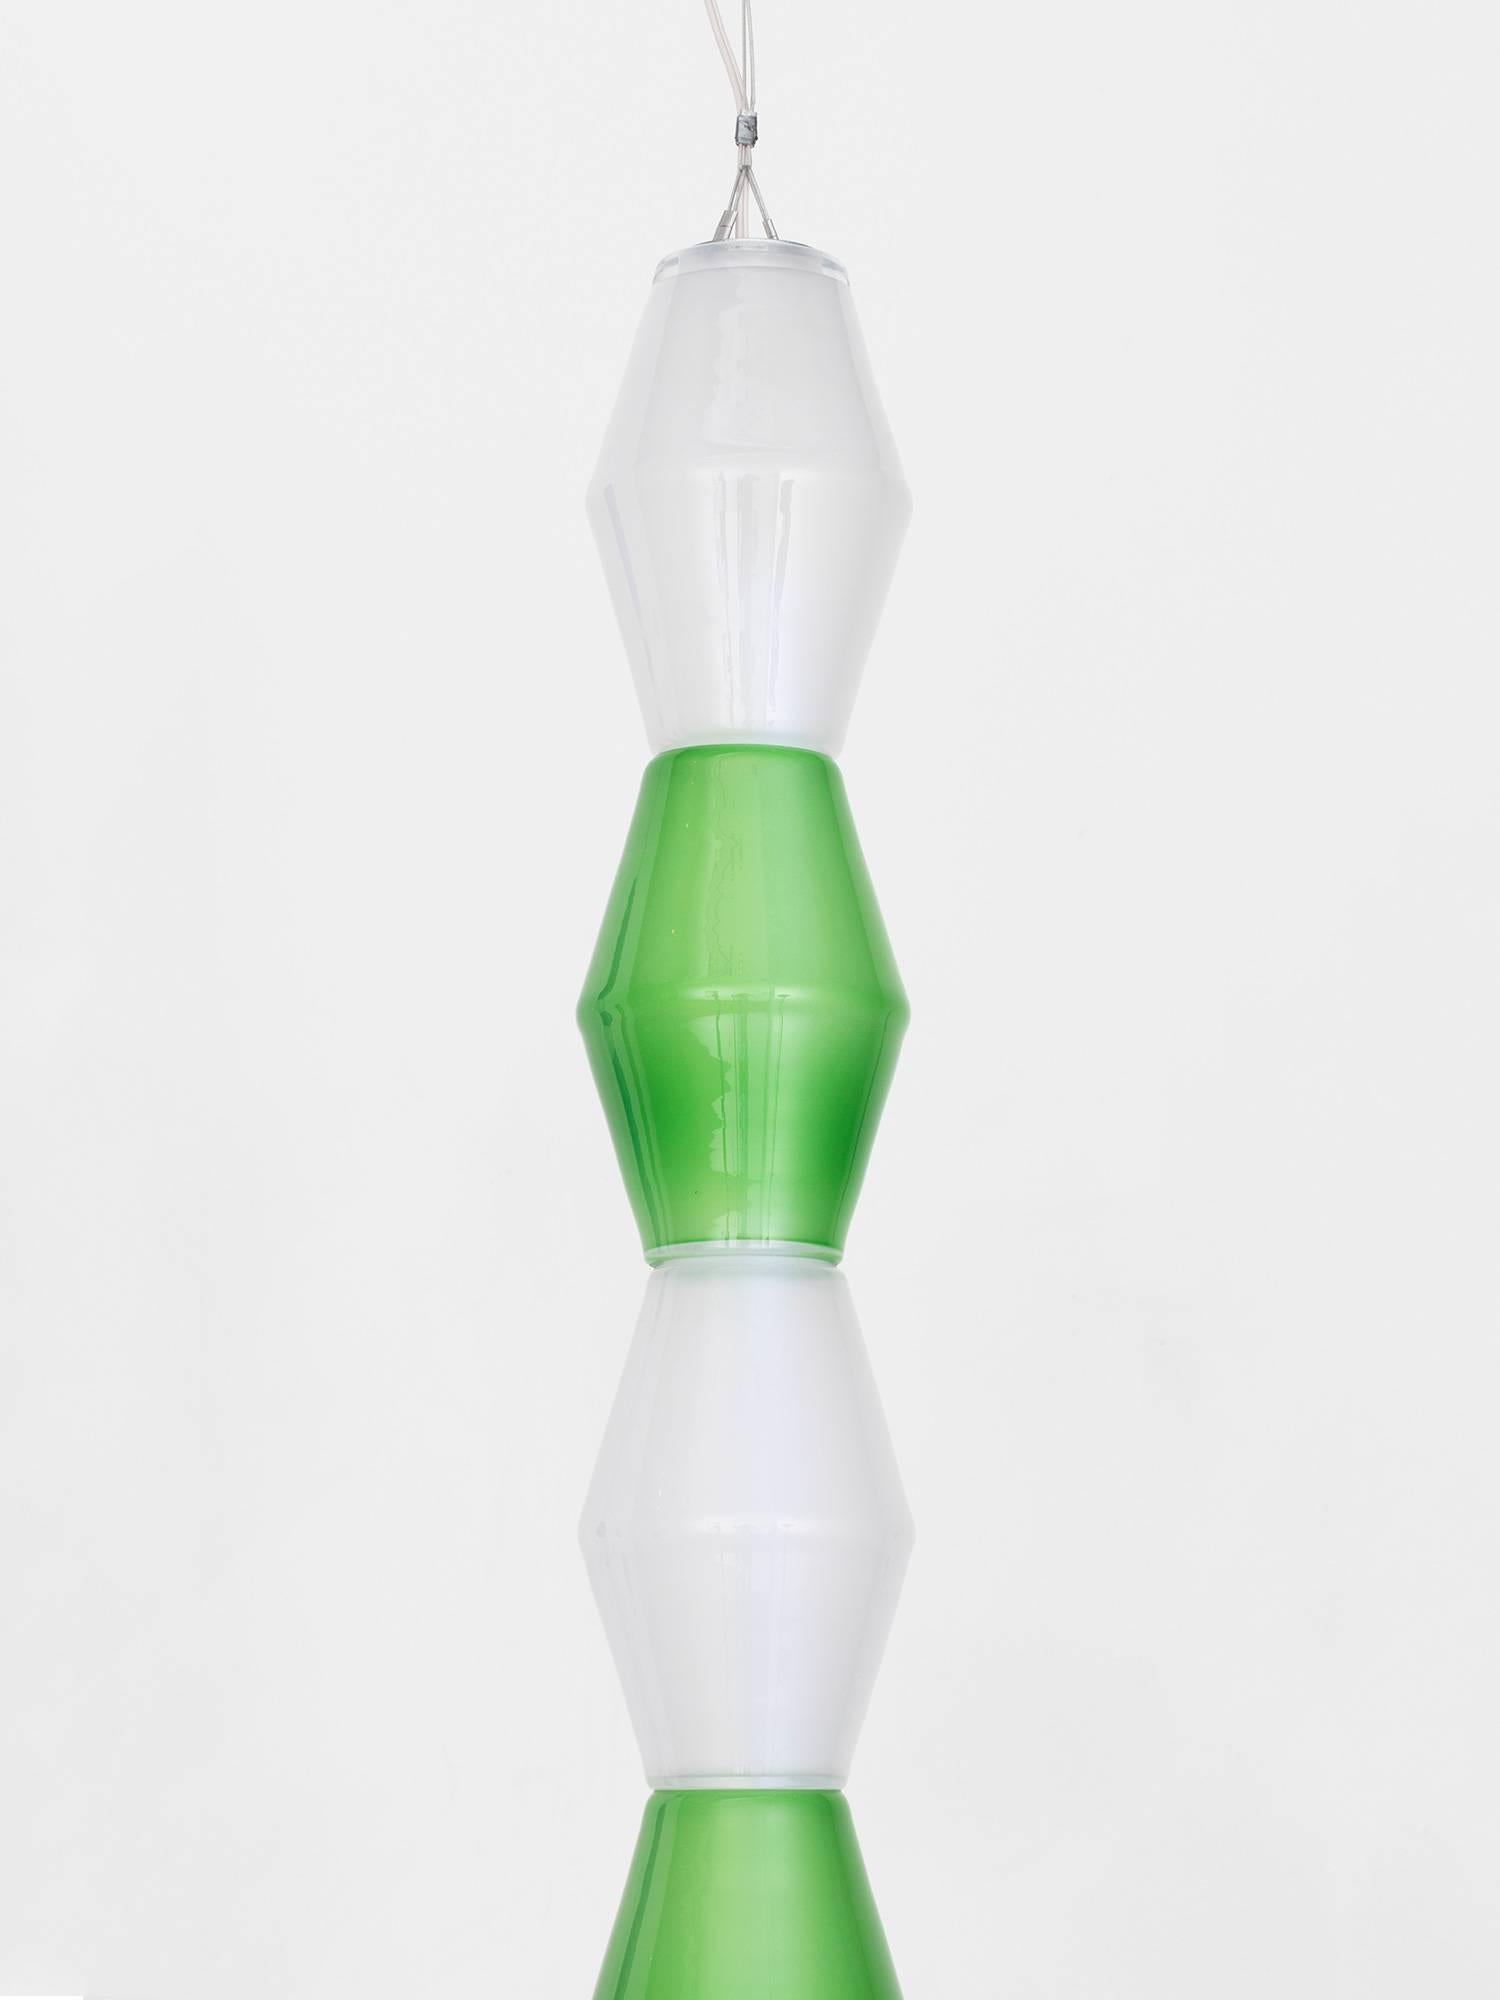 Handgefertigte, totemistische Glas-Hängelampe des norwegischen Künstlers/Architekten Tron Meyer. Die Leuchte besteht aus elf grünen und weißen Glasformen, die um einen LED-Kern herum angeordnet sind und in einem 200 Jahre alten Glasstudio in